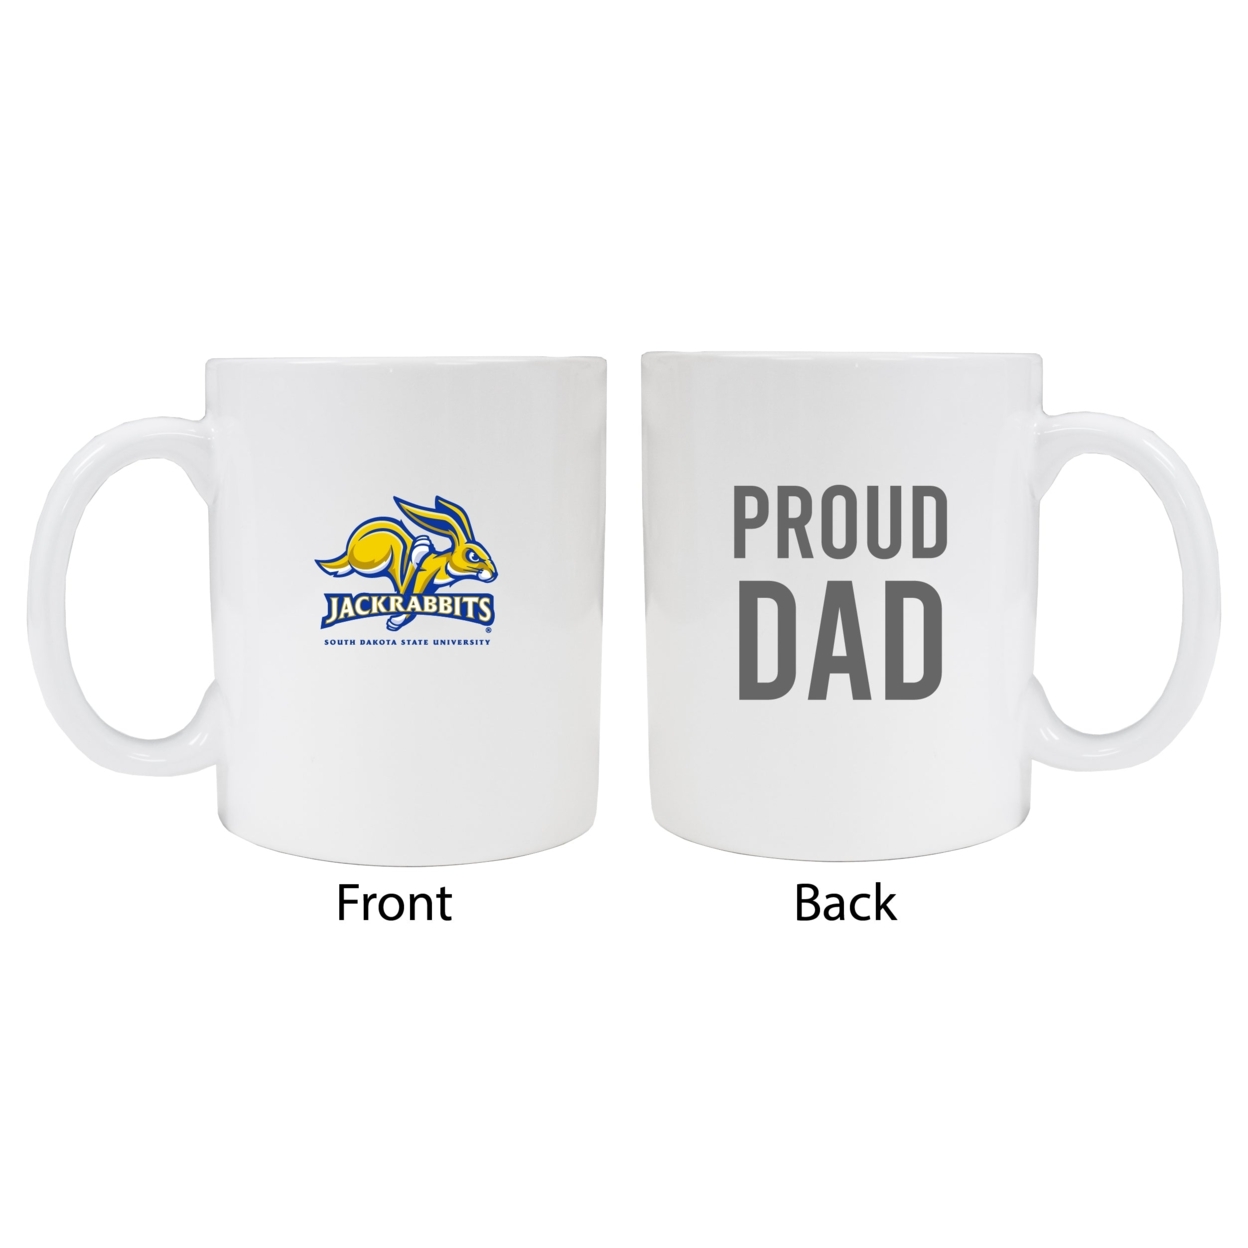 South Dakota State Jackrabbits Proud Dad Ceramic Coffee Mug - White (2 Pack)